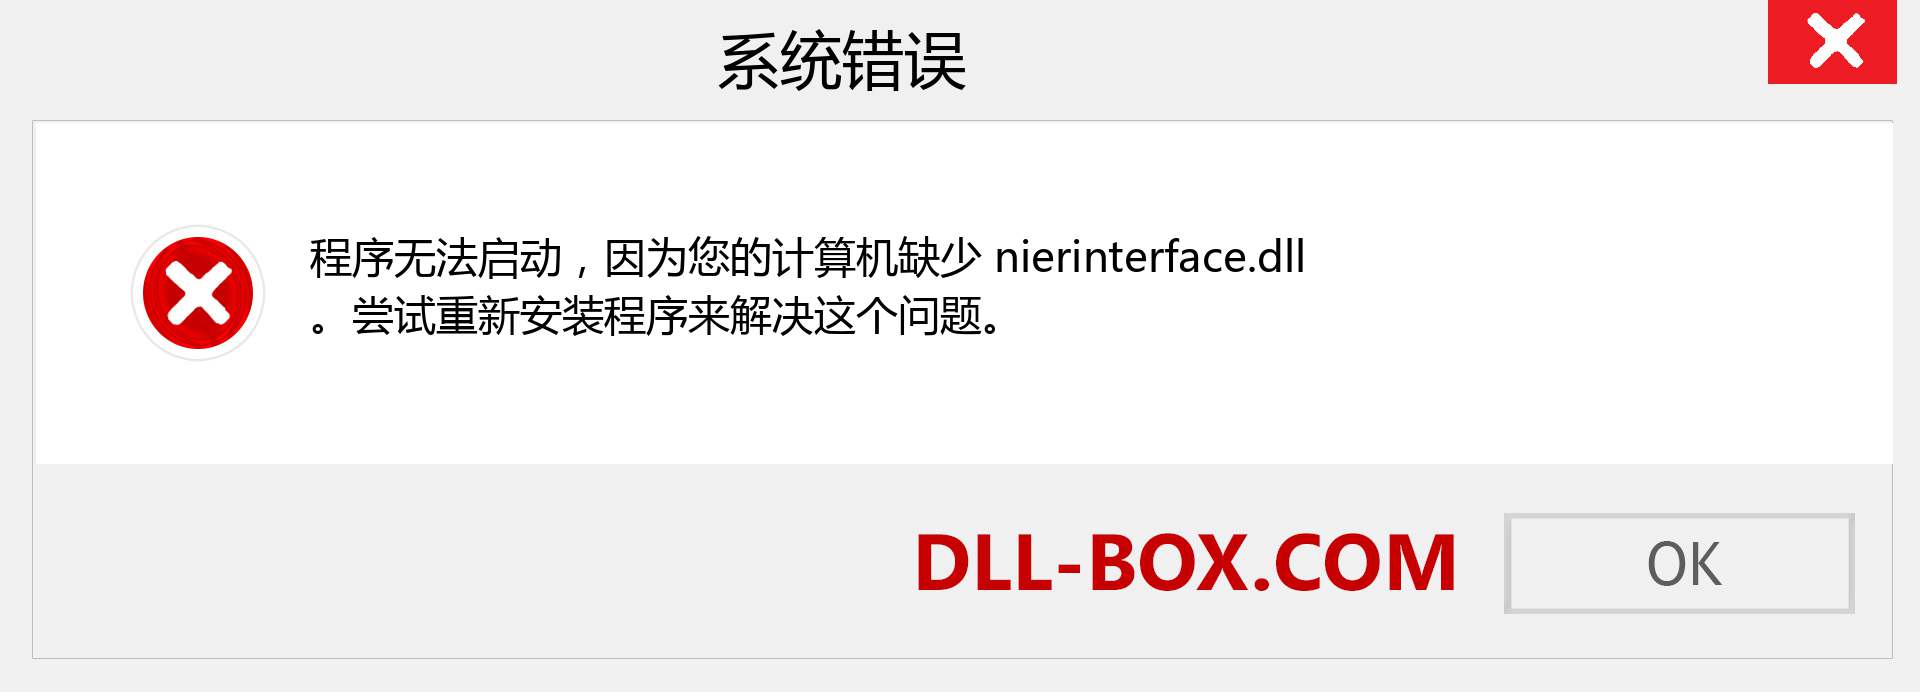 nierinterface.dll 文件丢失？。 适用于 Windows 7、8、10 的下载 - 修复 Windows、照片、图像上的 nierinterface dll 丢失错误